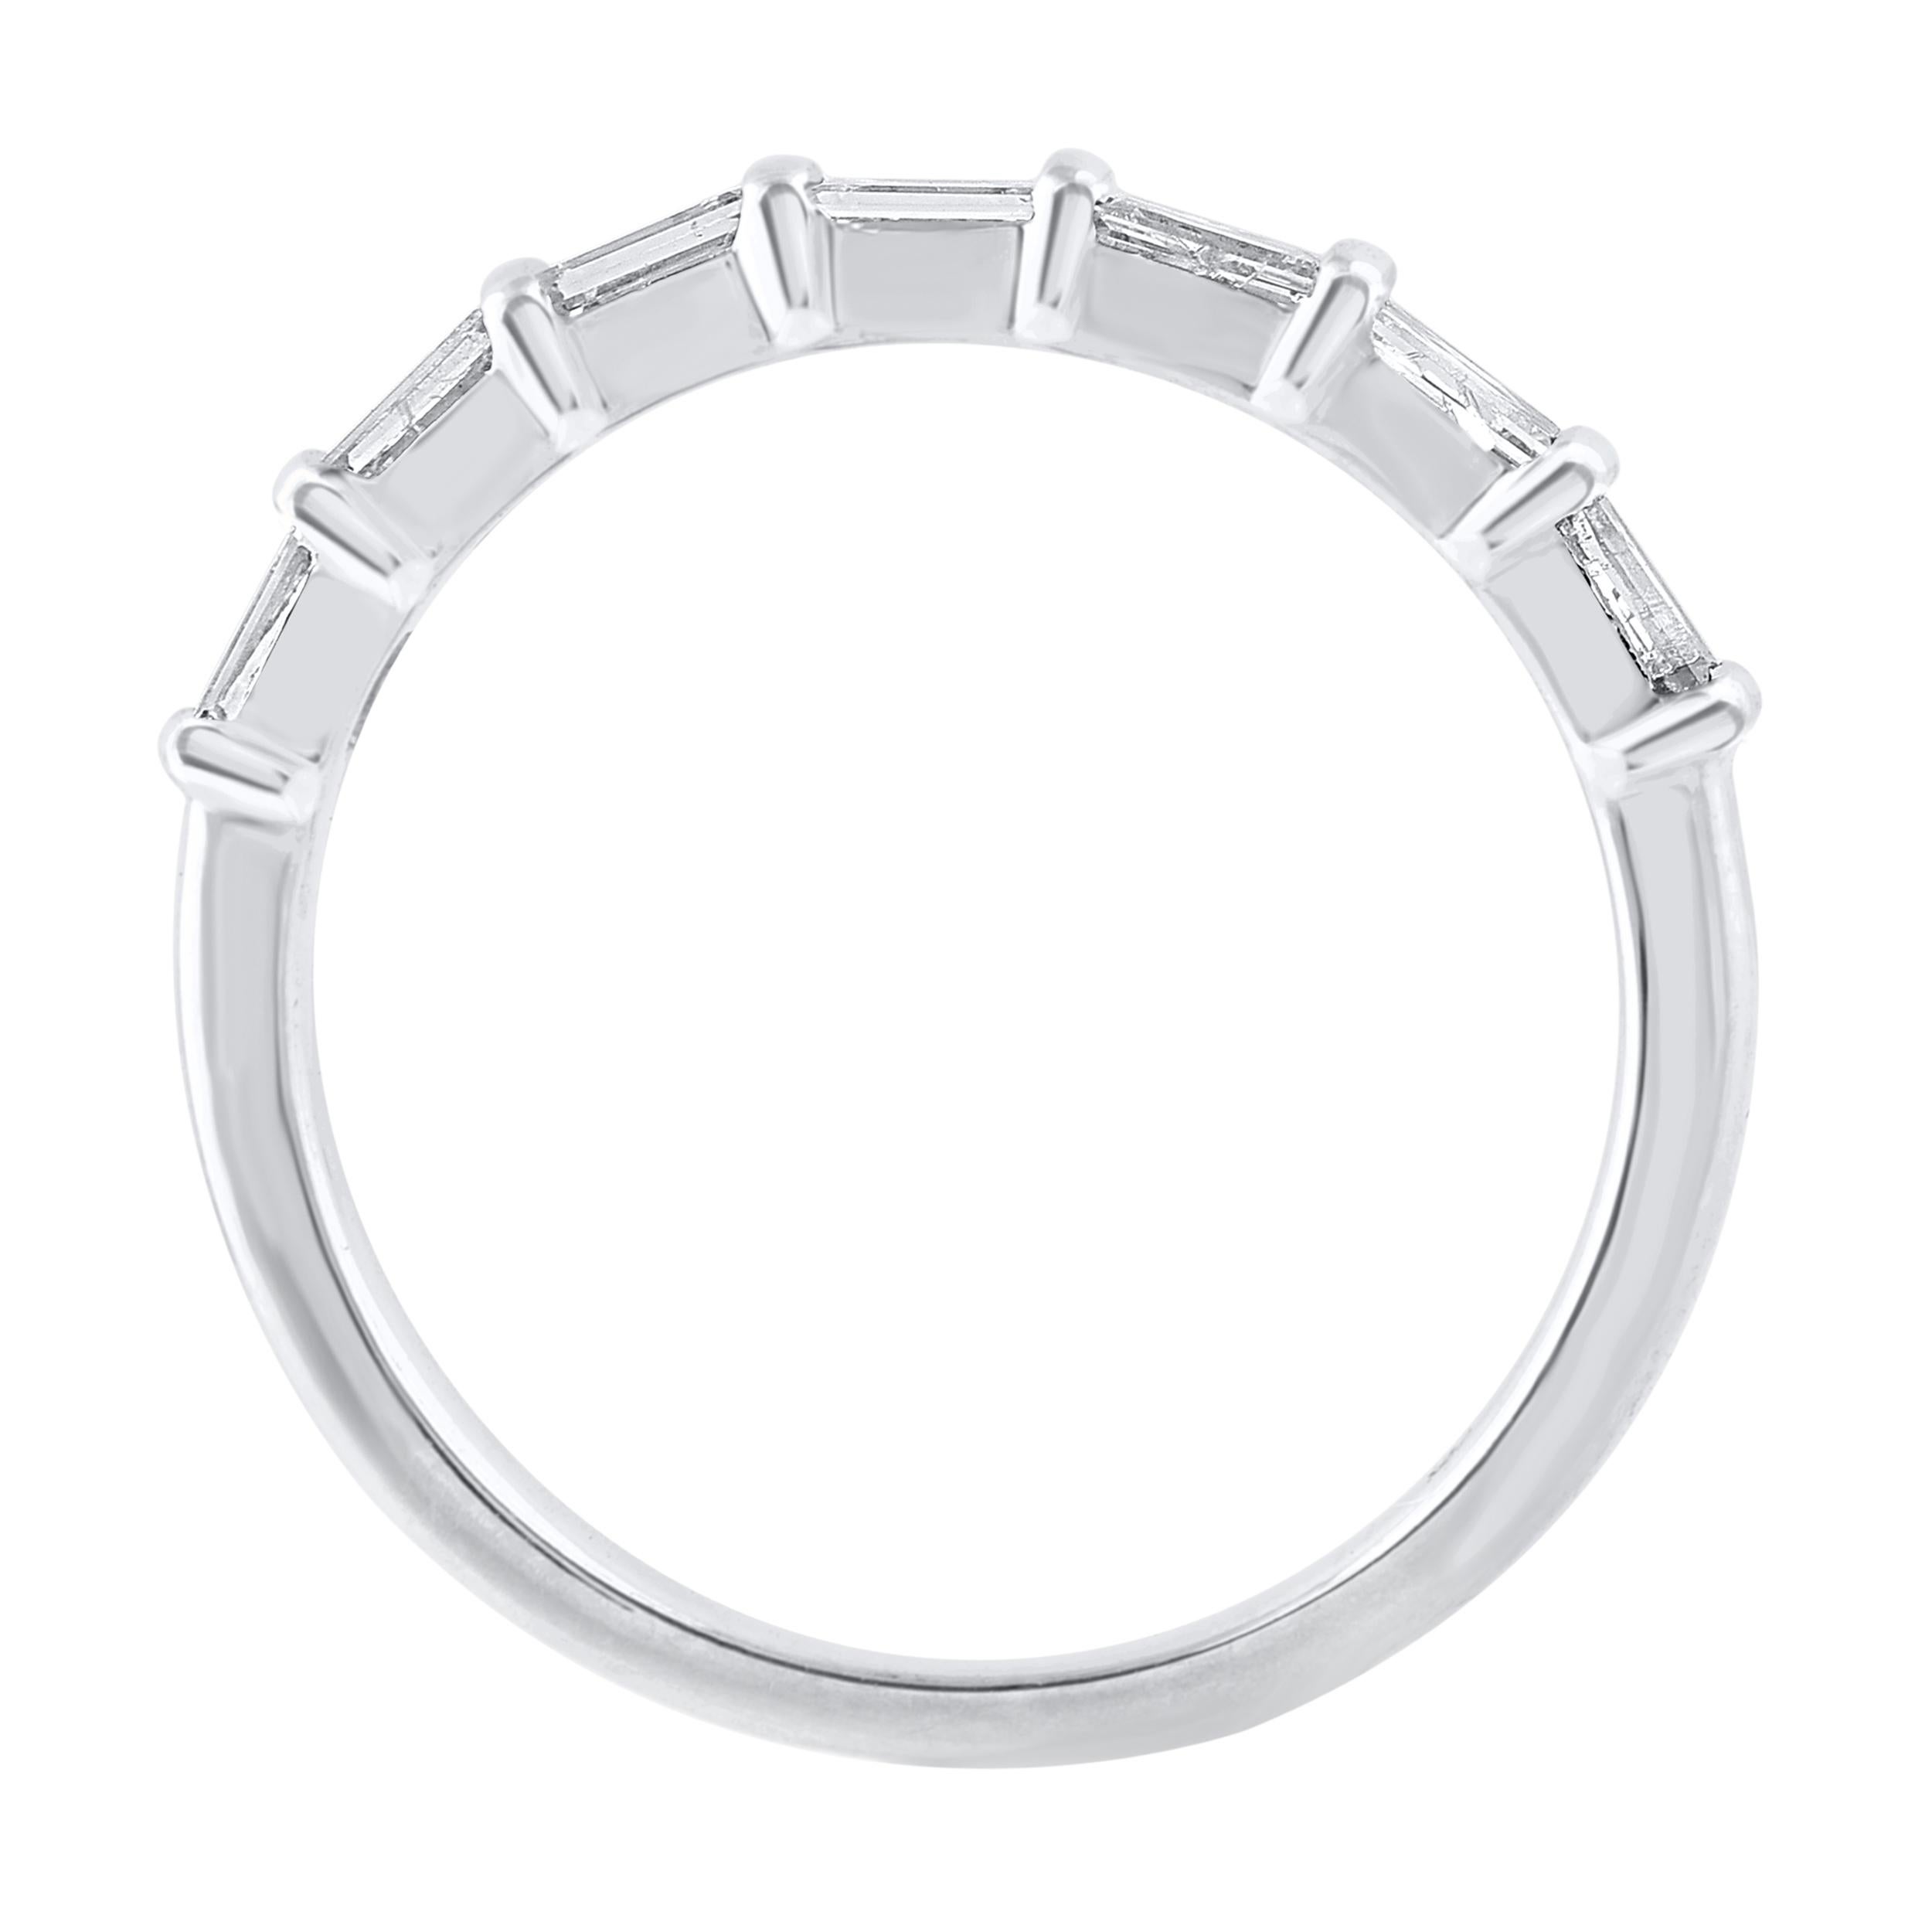 Dieser wunderschöne Ring mit sieben Steinen besteht aus schimmernden Baguette-Diamanten in Kanalfassung und ist aus 14 Karat Weißgold gefertigt. Der Ring ist mit insgesamt 7 natürlichen Diamanten im Baguetteschliff besetzt, das Gesamtgewicht der